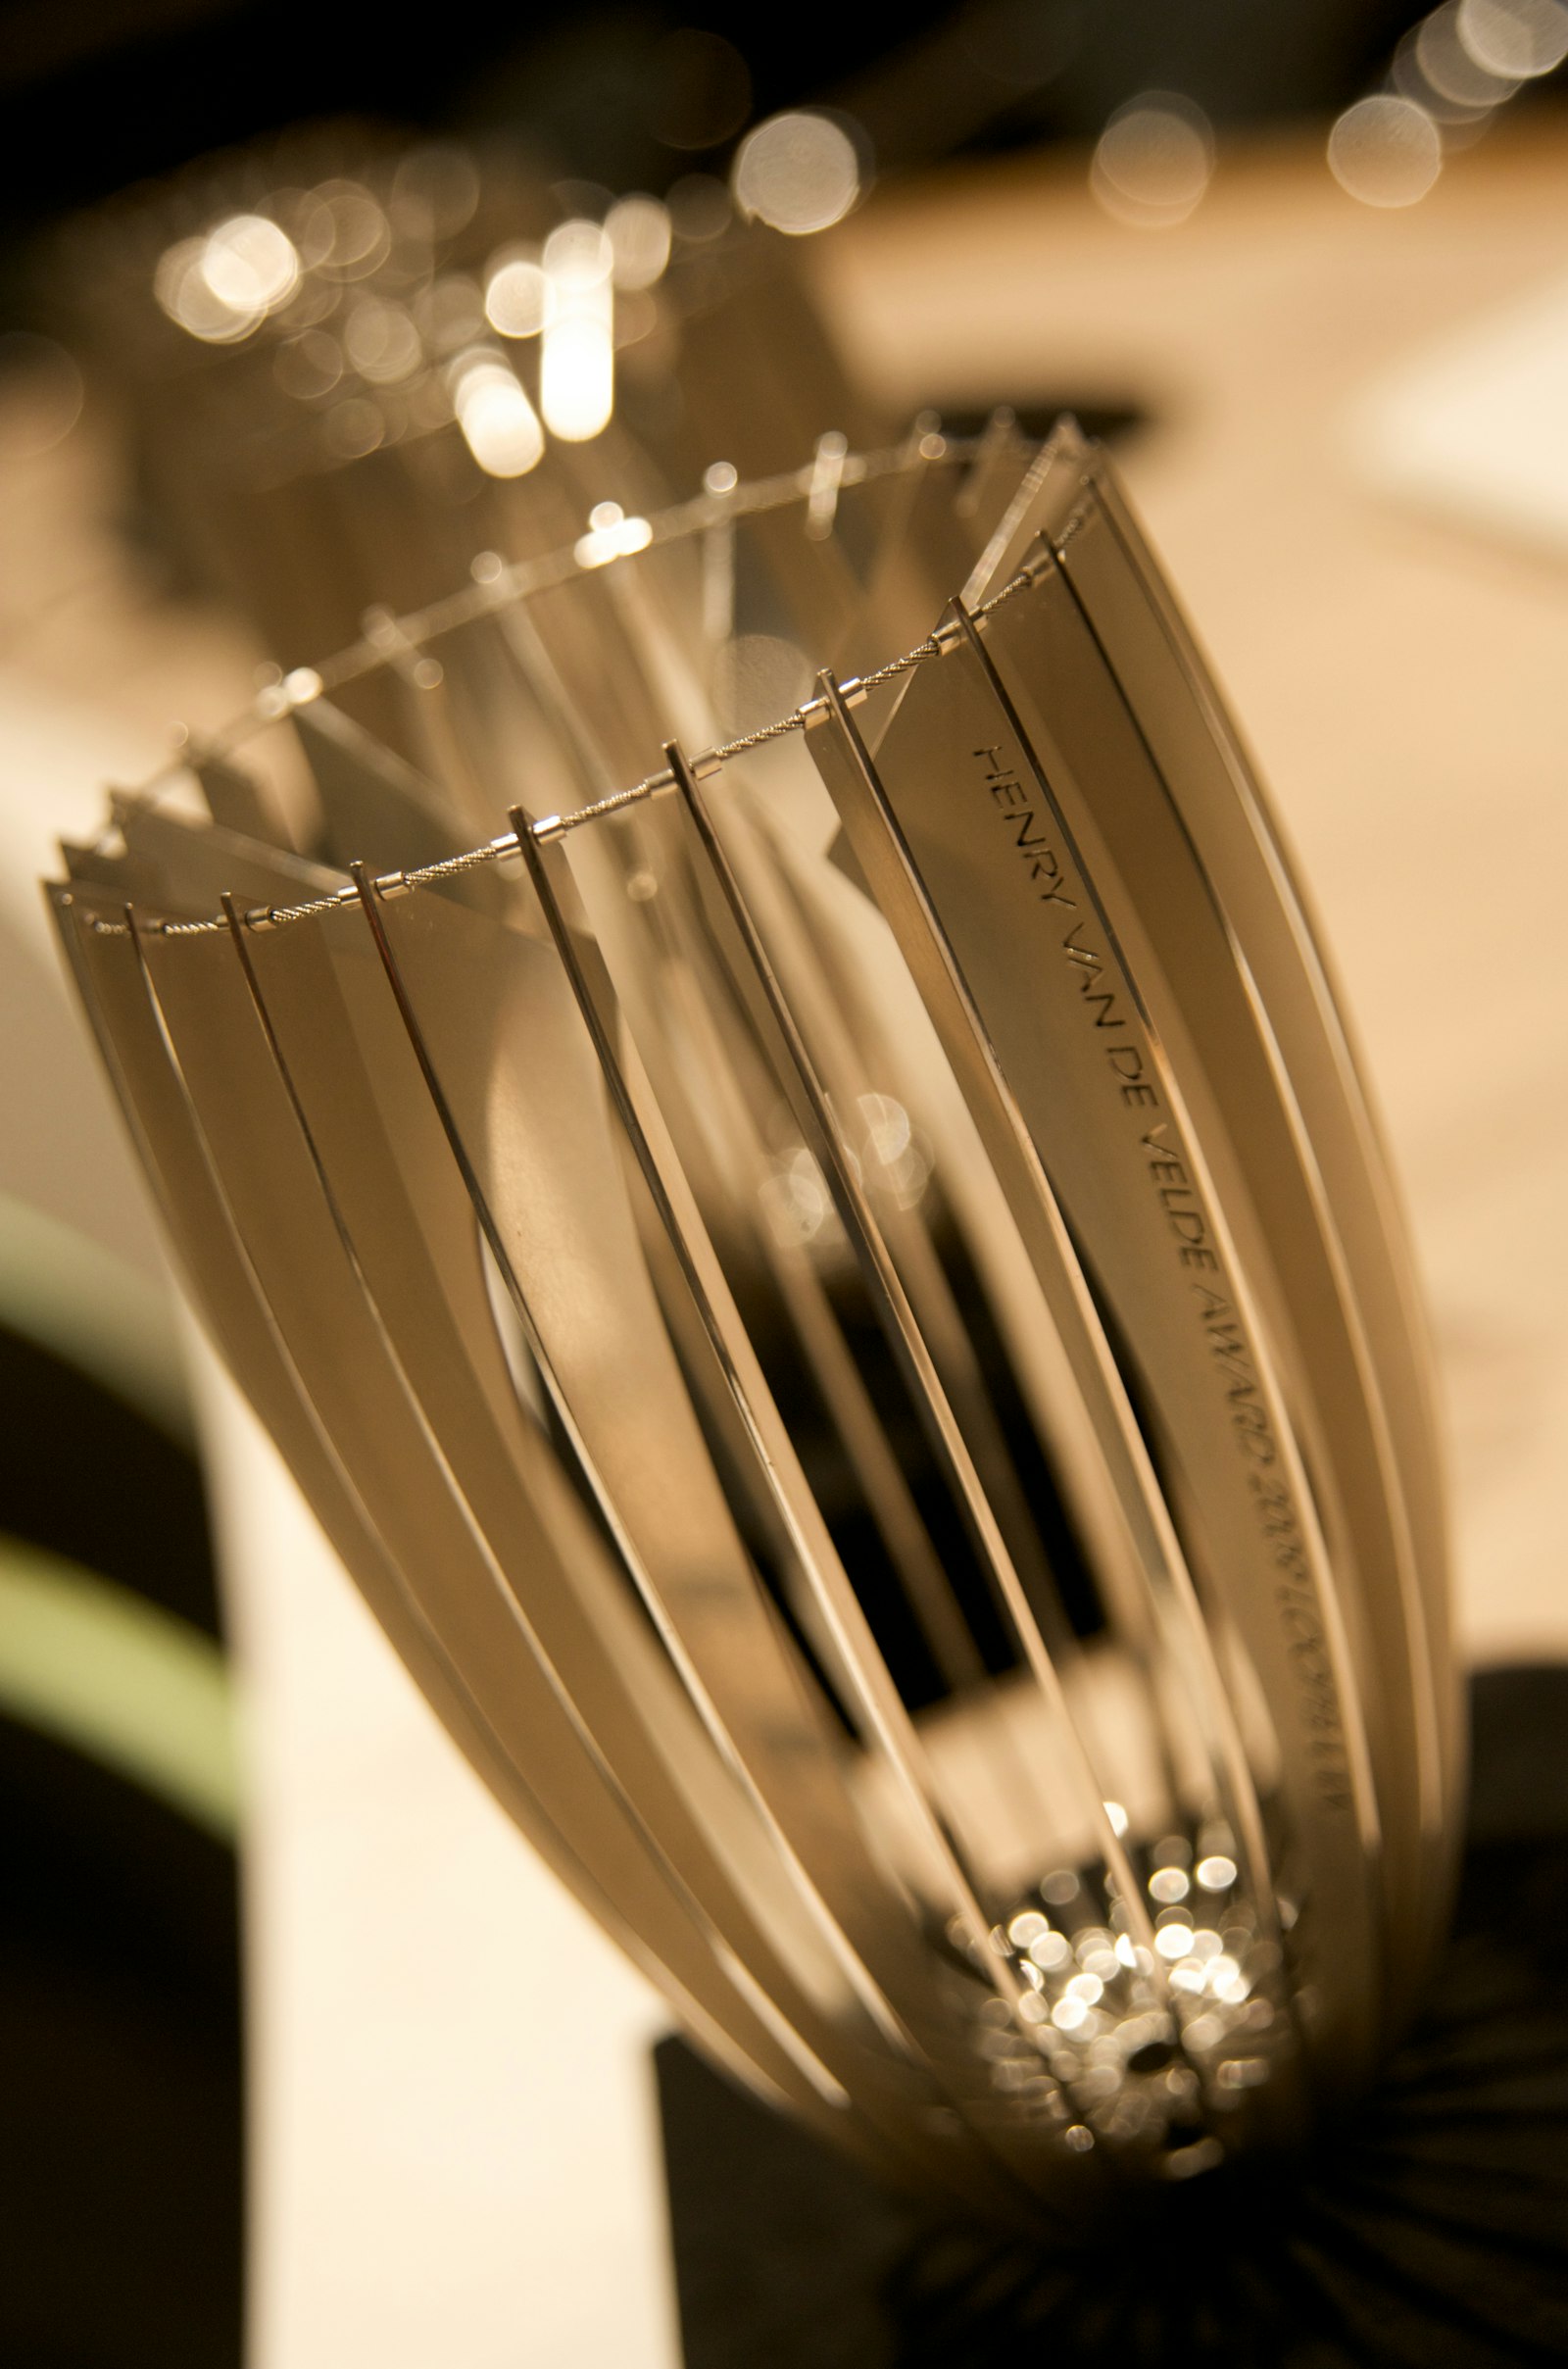 The Henry van de Velde Awards trophy, designed by Helena Schepens (2010)